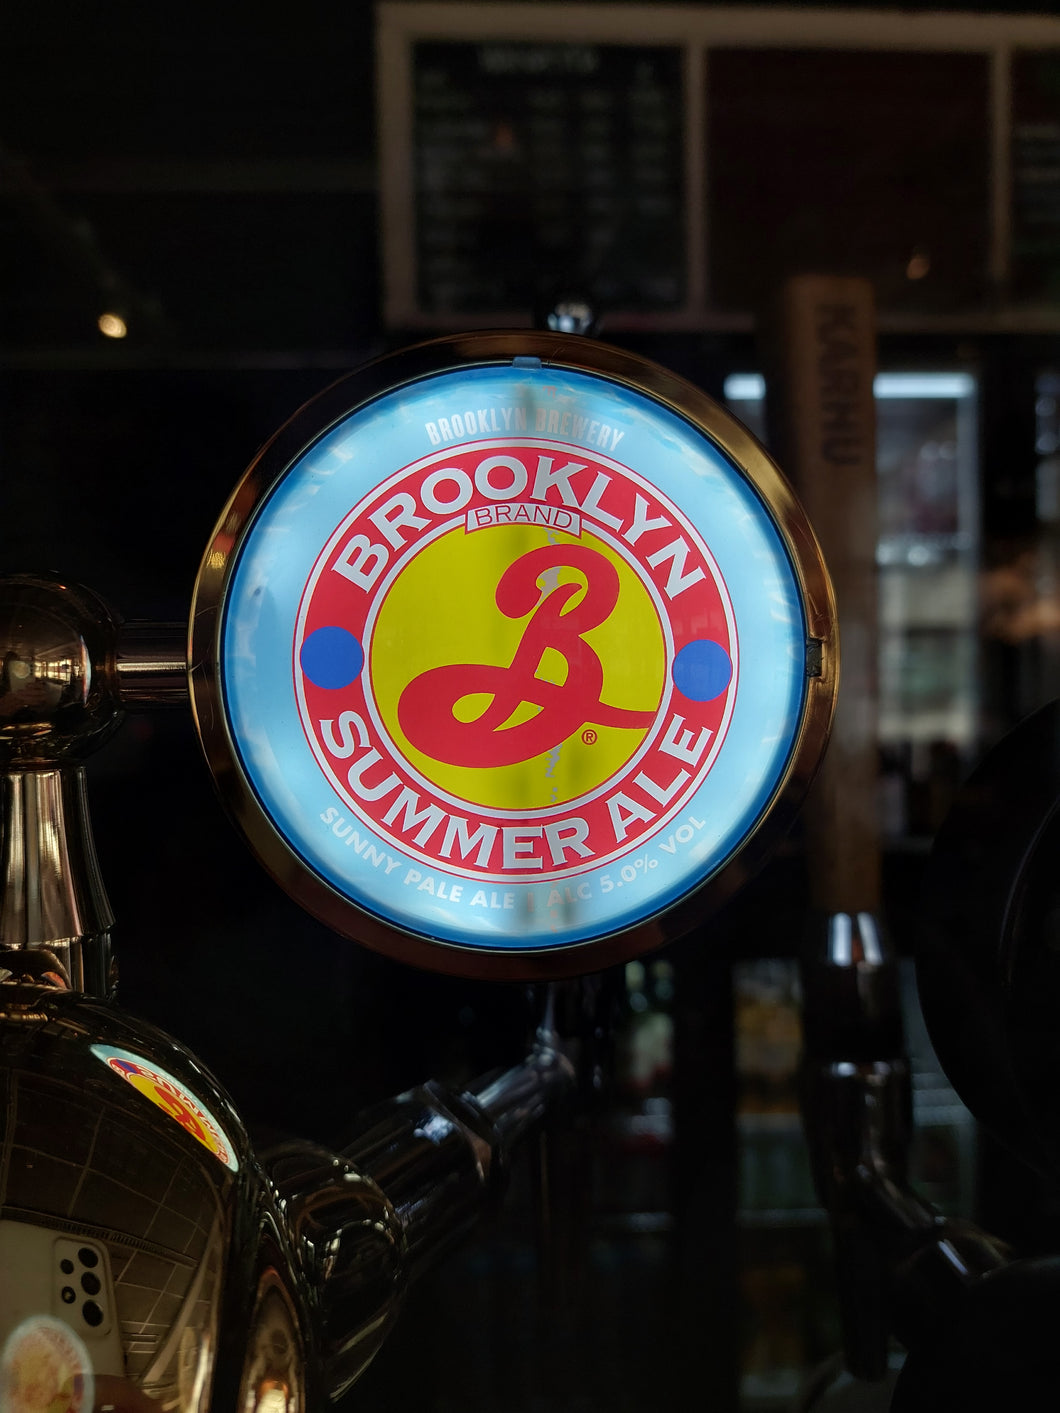 Brooklyn Brewery Summer Ale